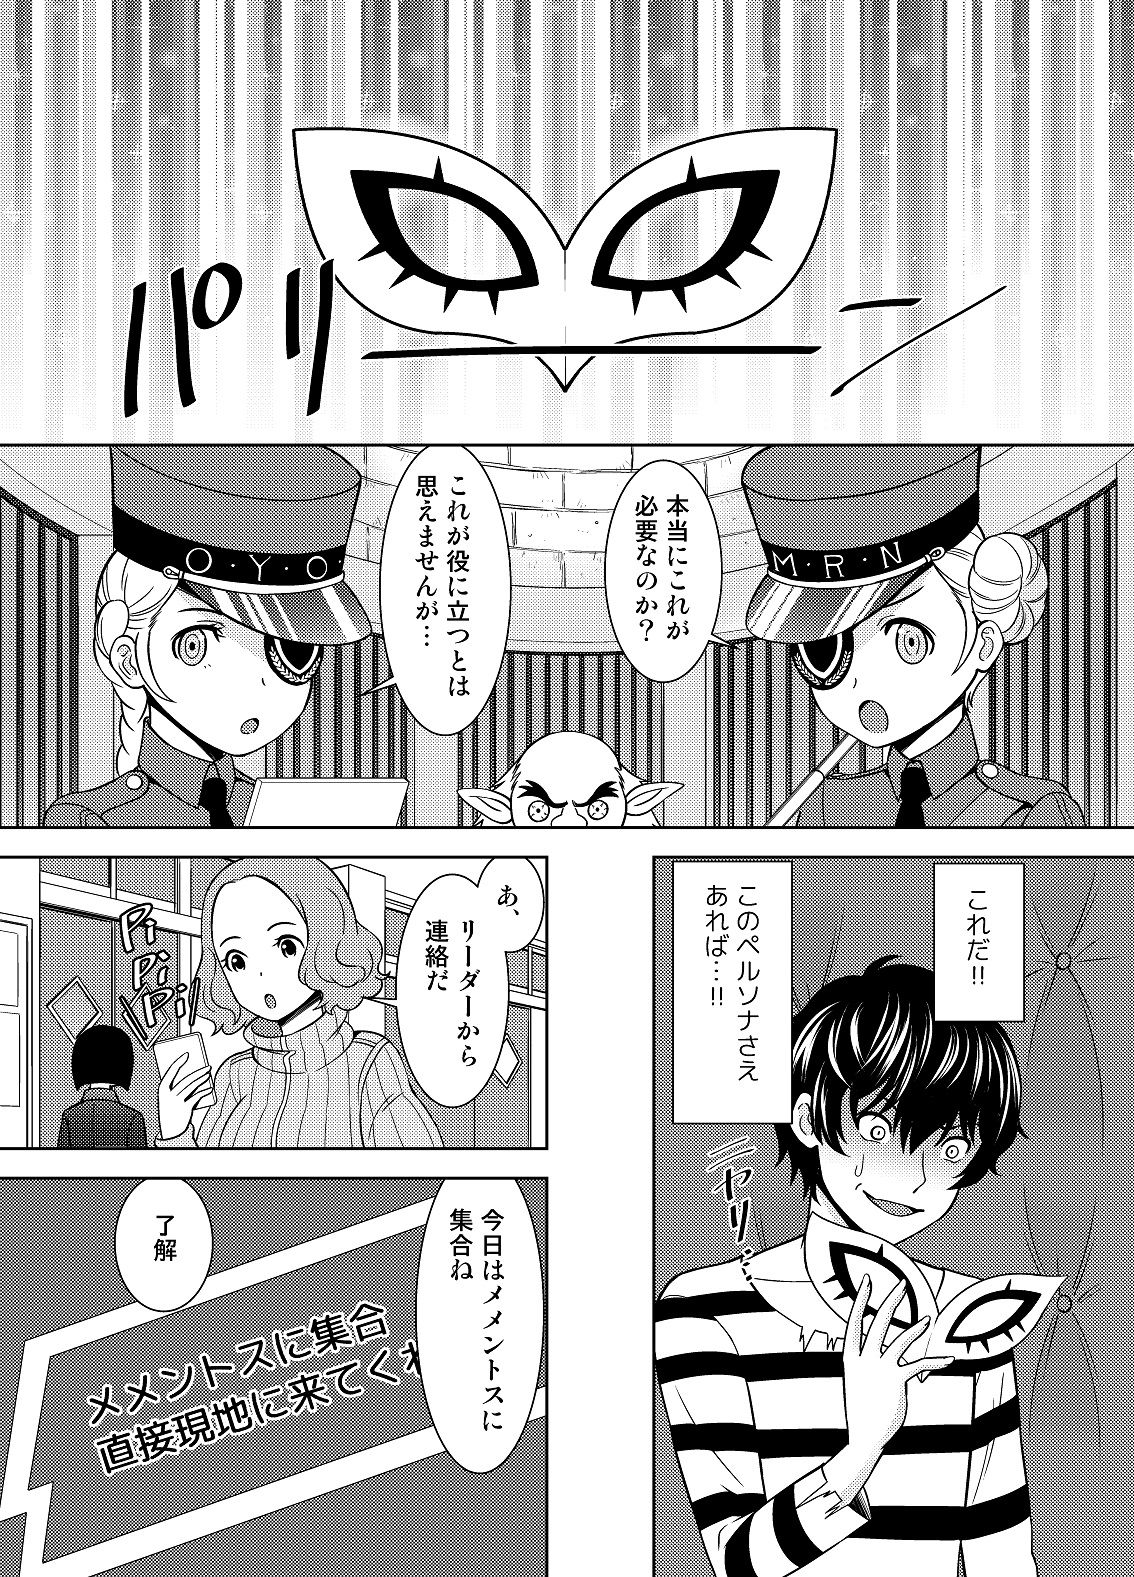 [Shikiouzi] Have Kokoro of the Haru (Persona 5) [Digital] page 6 full